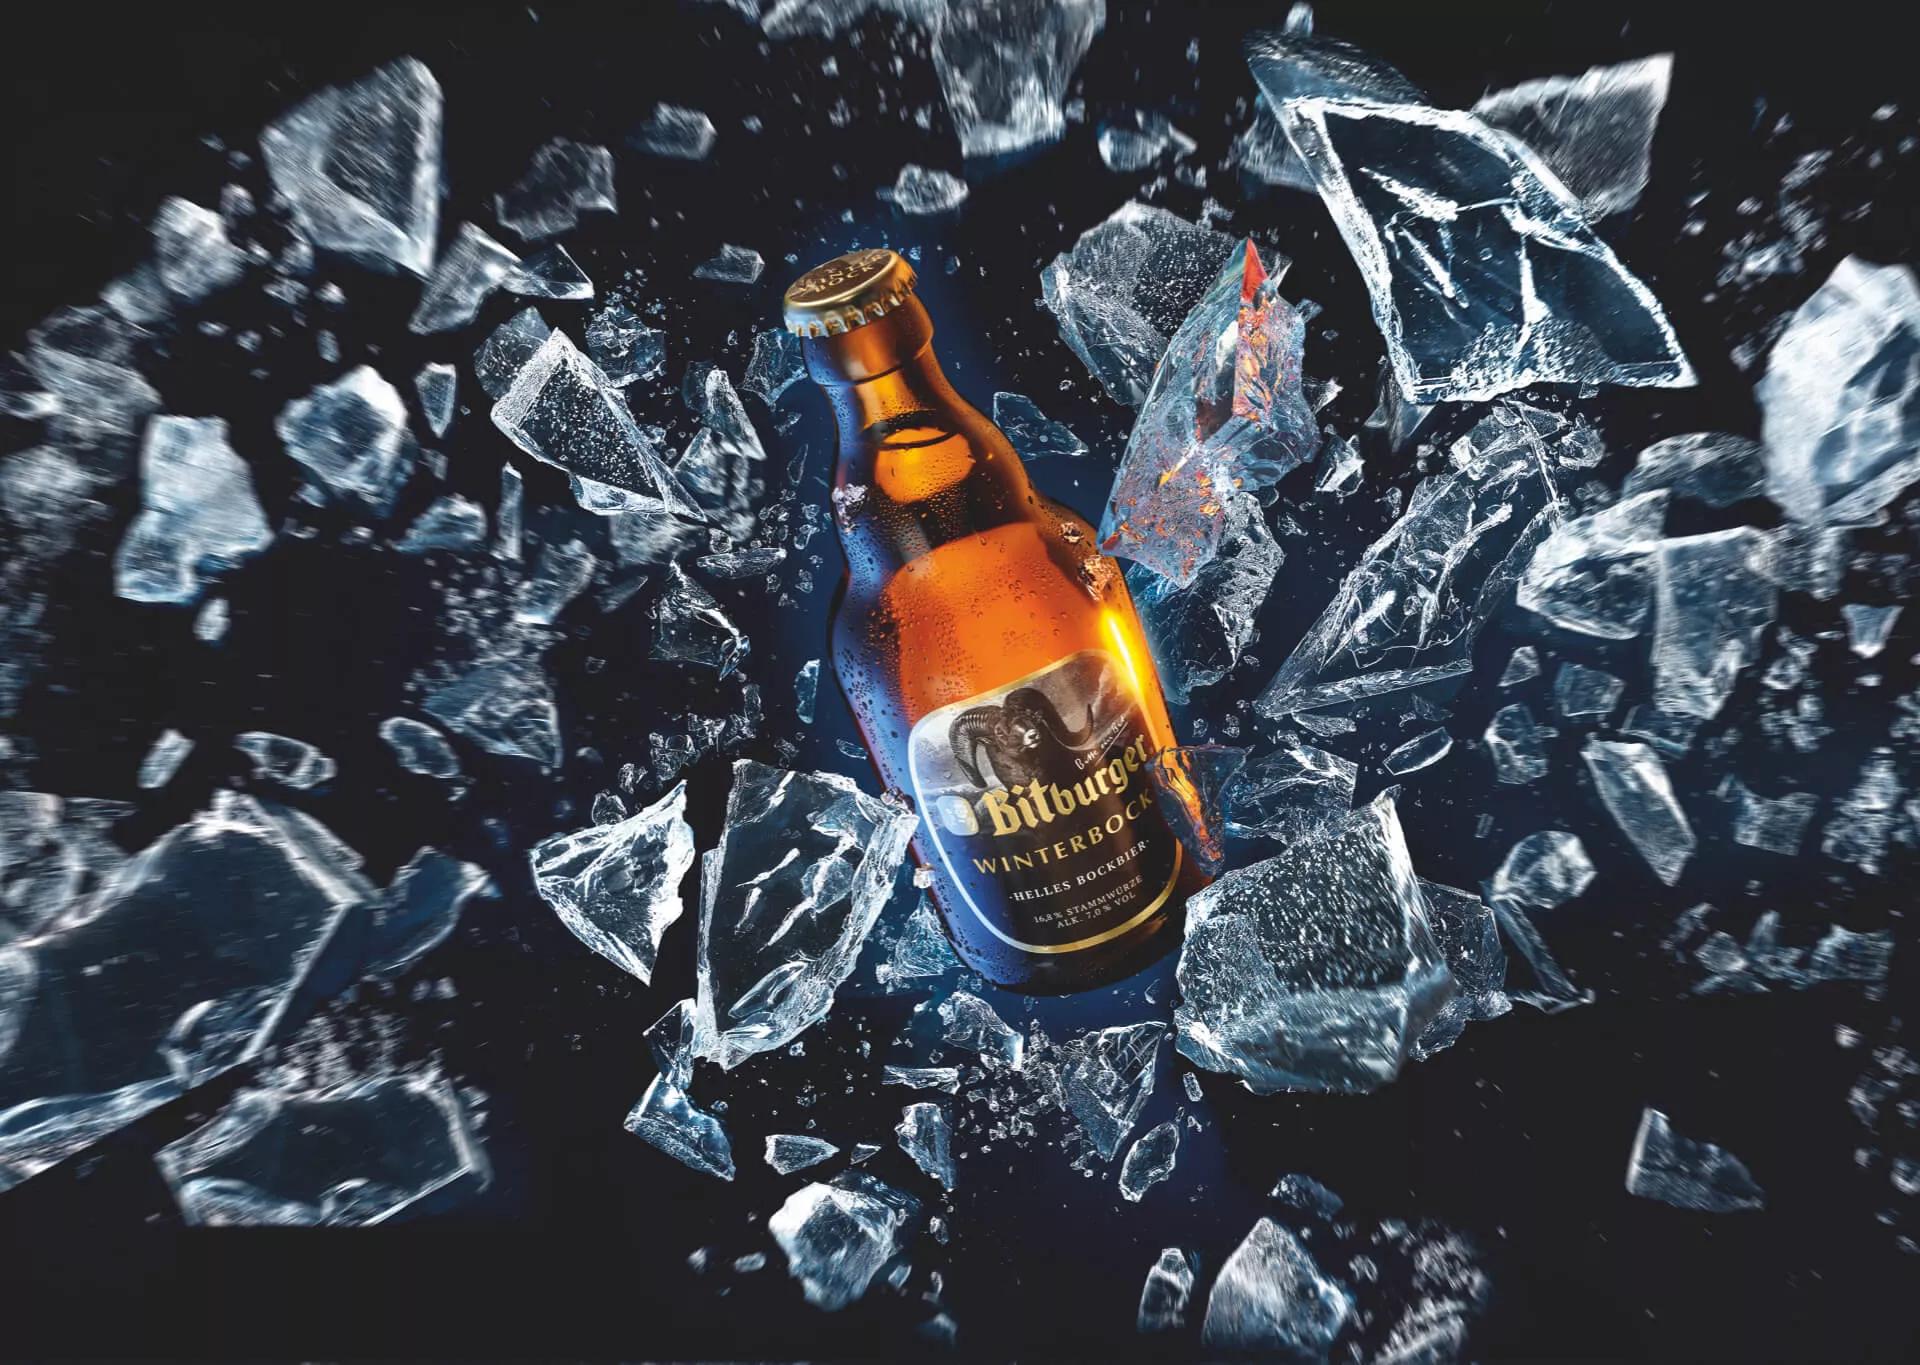 Flasche im Stubbi Format mit Winterbock Etikett vor dunkelblauem Hintergrund und zerschmettertem klaren Eis